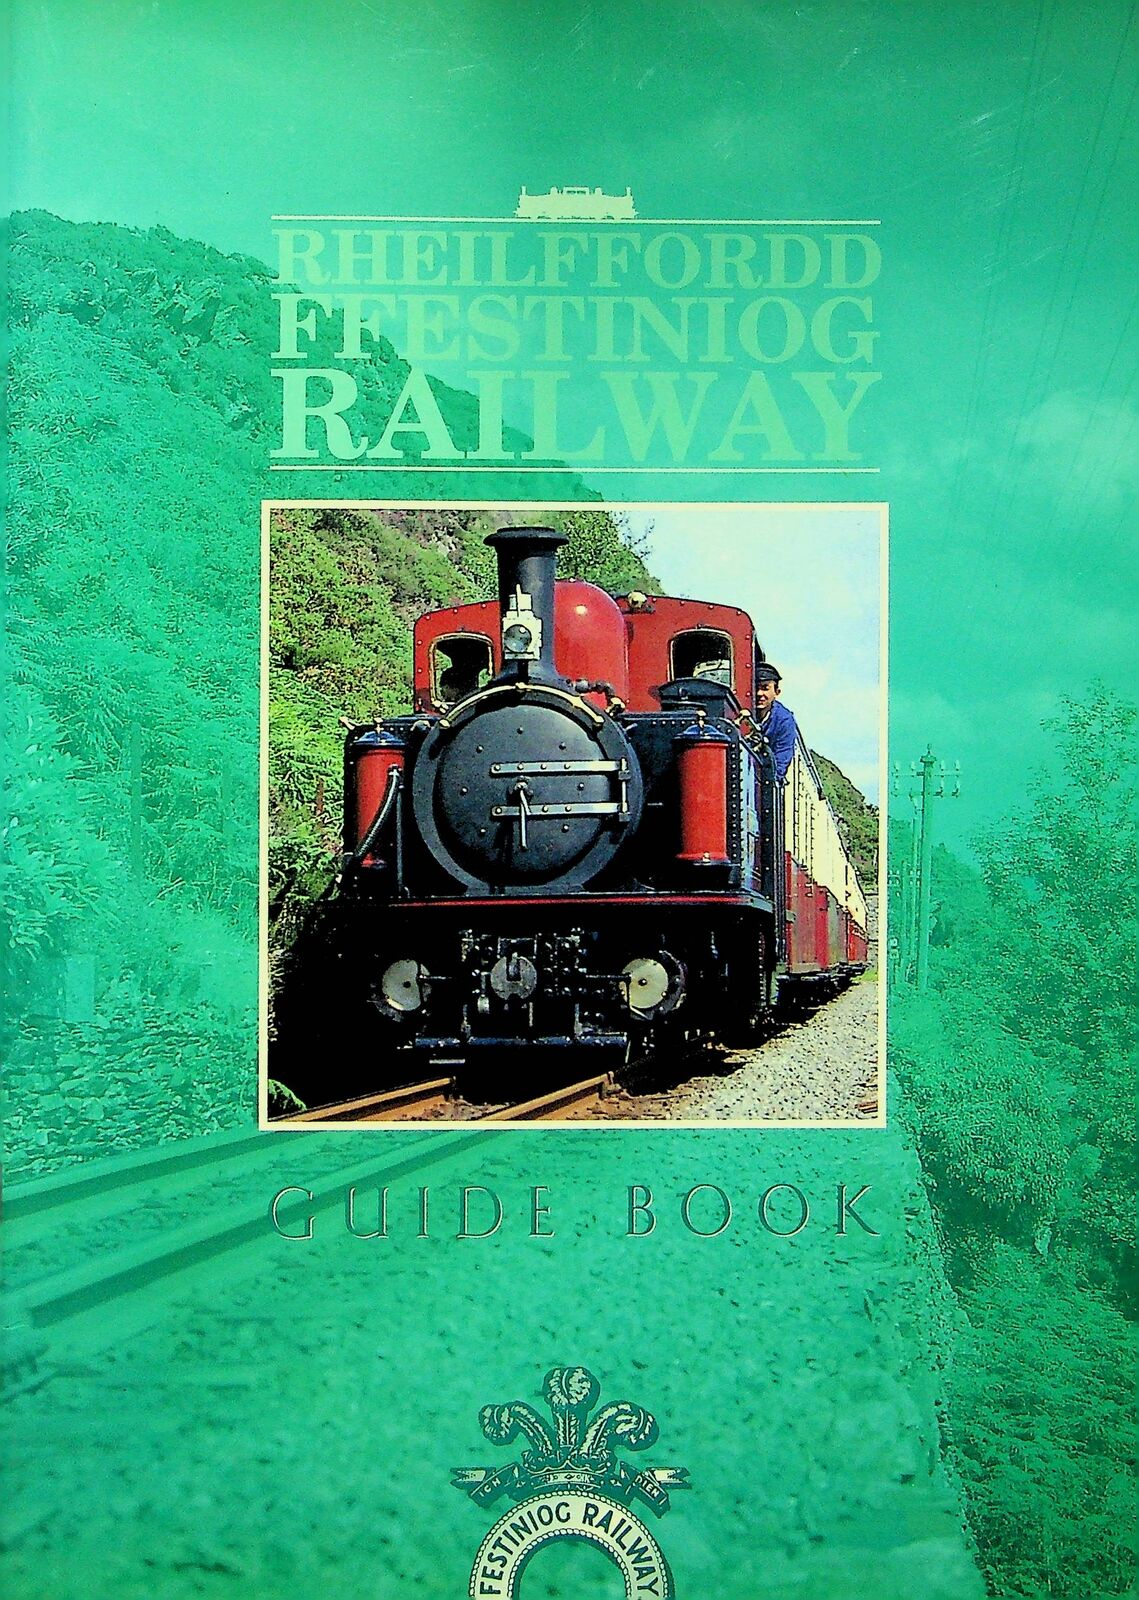 Rheilffordd Ffestiniog Railway Guide Book Wales England United Kingdom Company Y